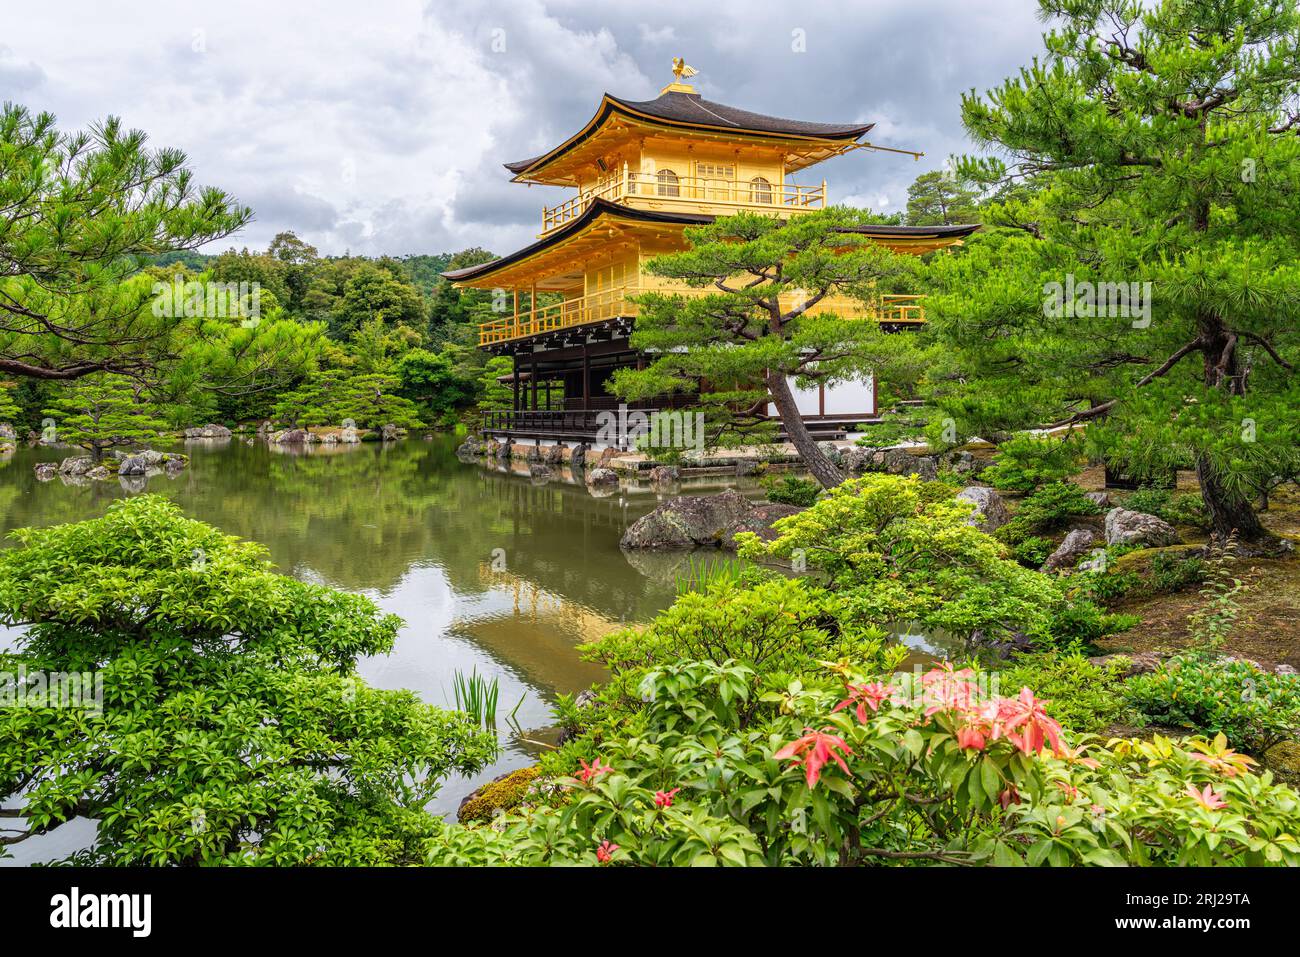 Malerischer Anblick mit dem herrlichen goldenen Pavillon im Kinkaku-JI-Tempel in Kyoto. Japan. Stockfoto